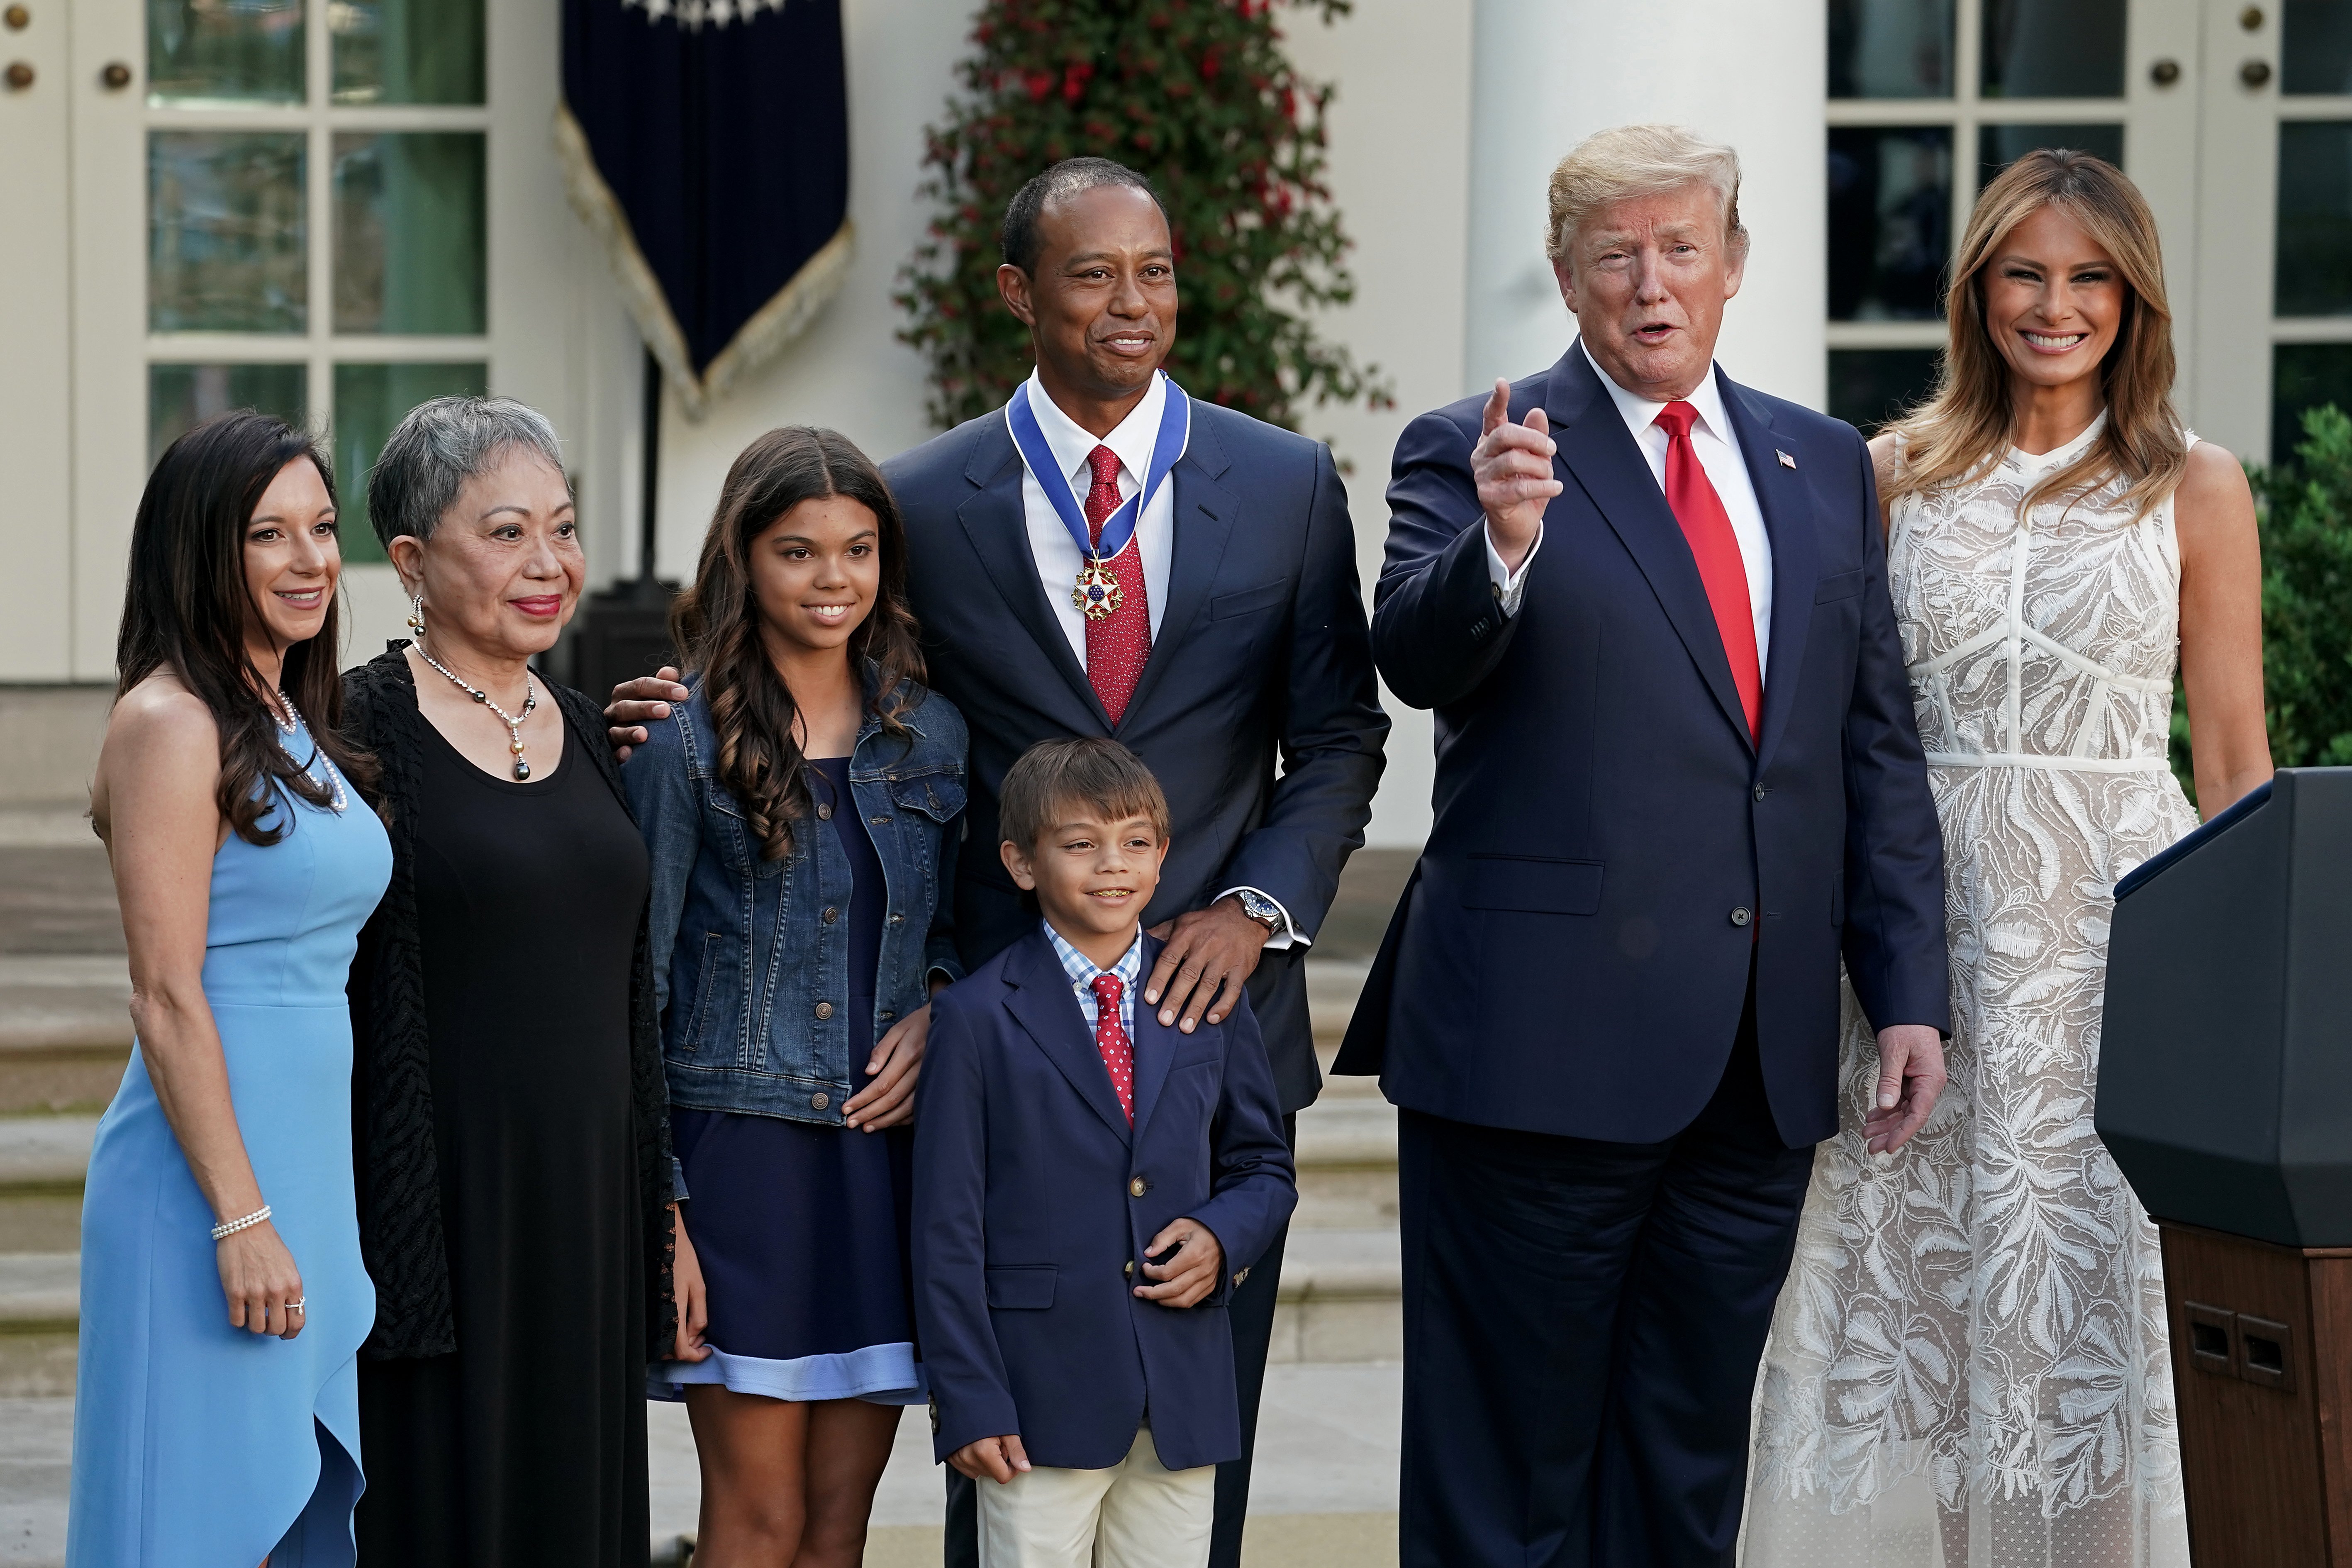  Donald Trump y Melania Trump posan con Tiger Woods y su familia en el Jardín de Rosas de la Casa Blanca | Foto: Getty Images